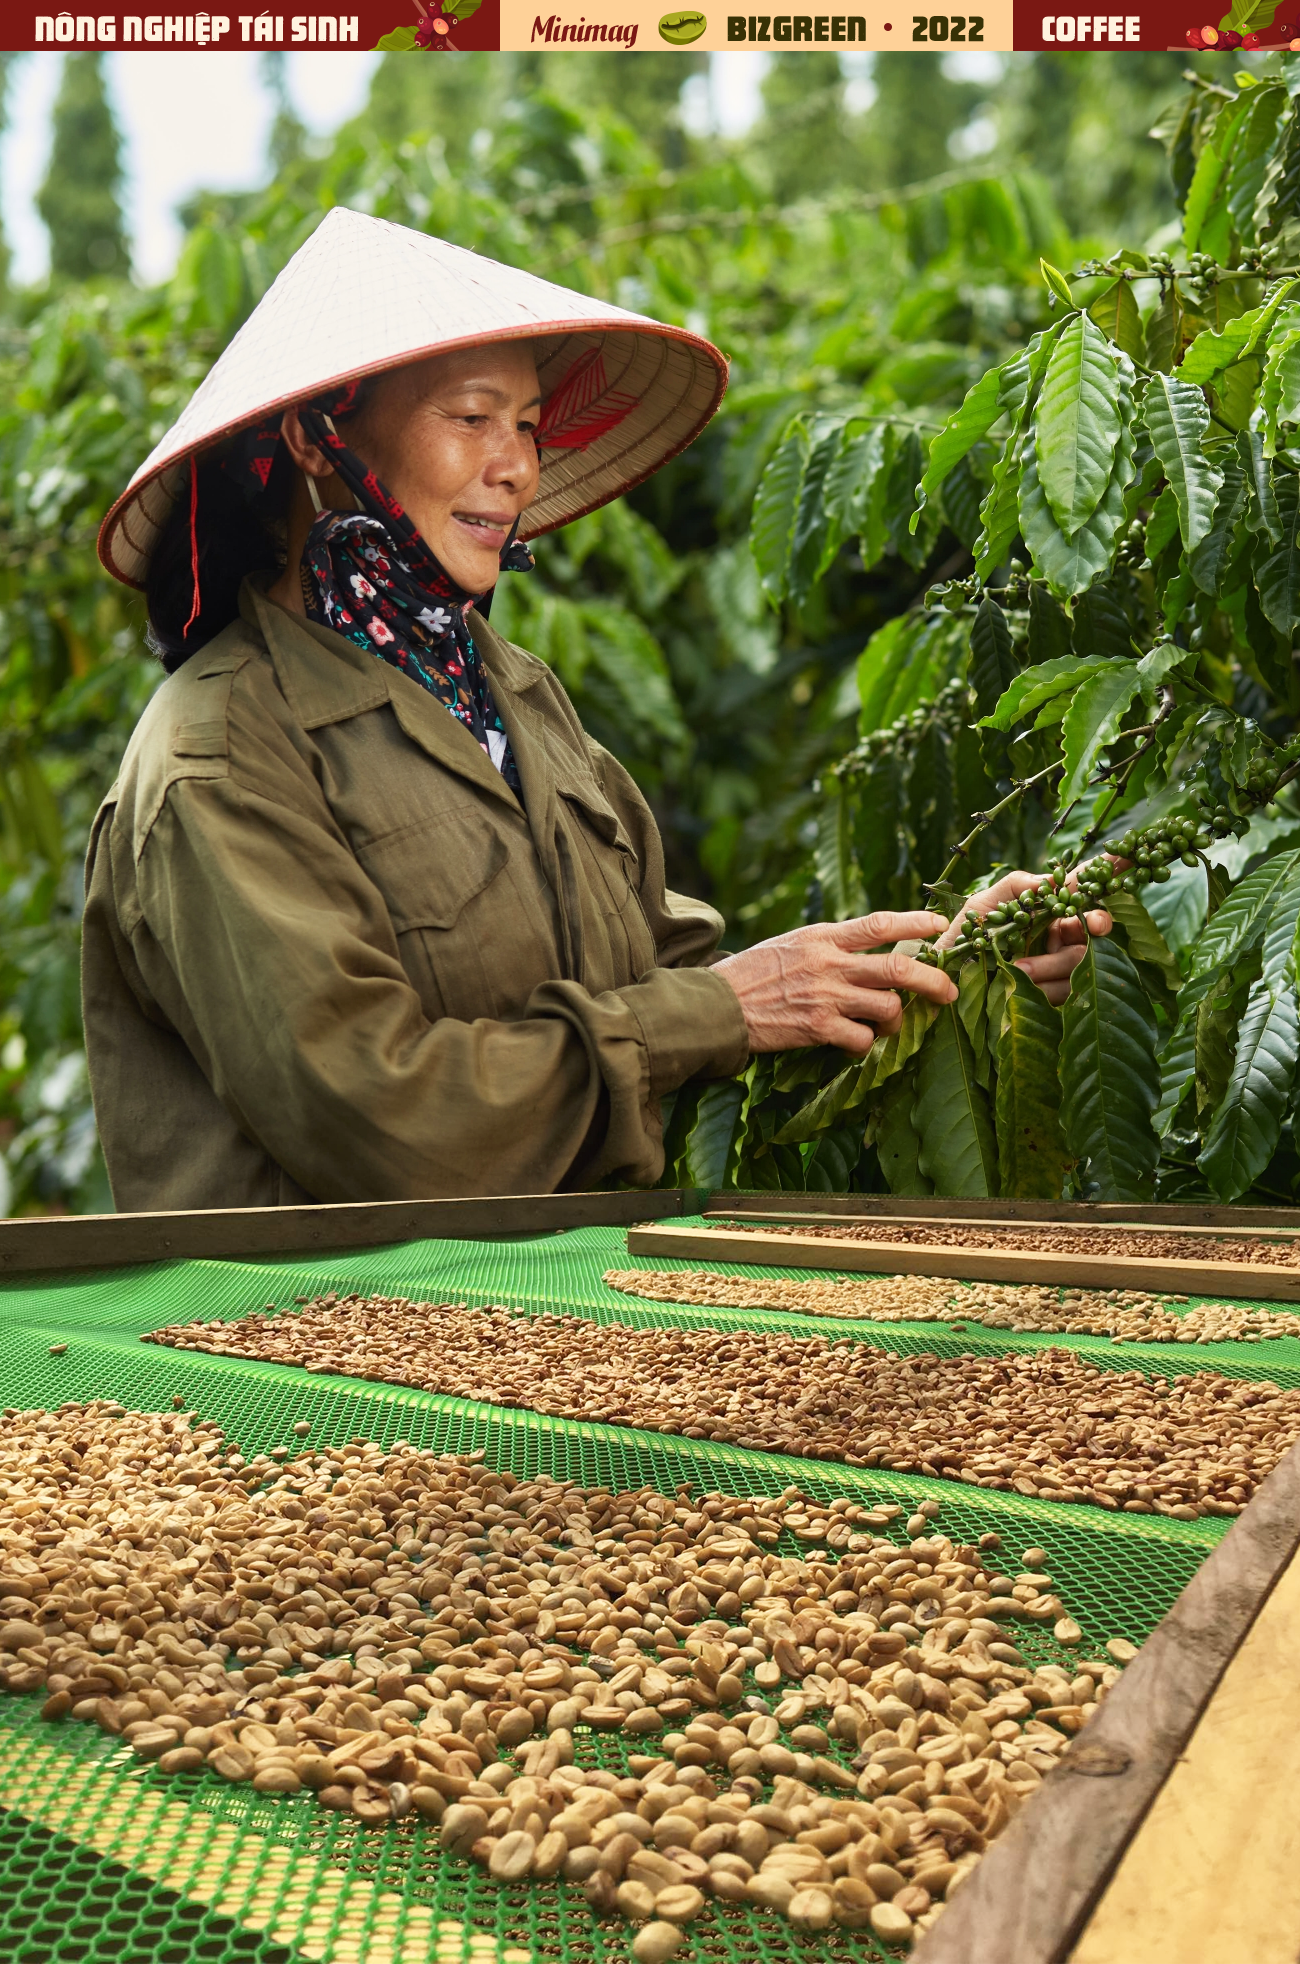 Bạn có biết trồng cà phê là trải nghiệm thú vị và bổ ích về thành tựu đời sống cũng như kinh tế? Hãy xem hình ảnh liên quan để tìm hiểu cách trồng, chăm sóc cây cà phê và khám phá giá trị của loại cây này.